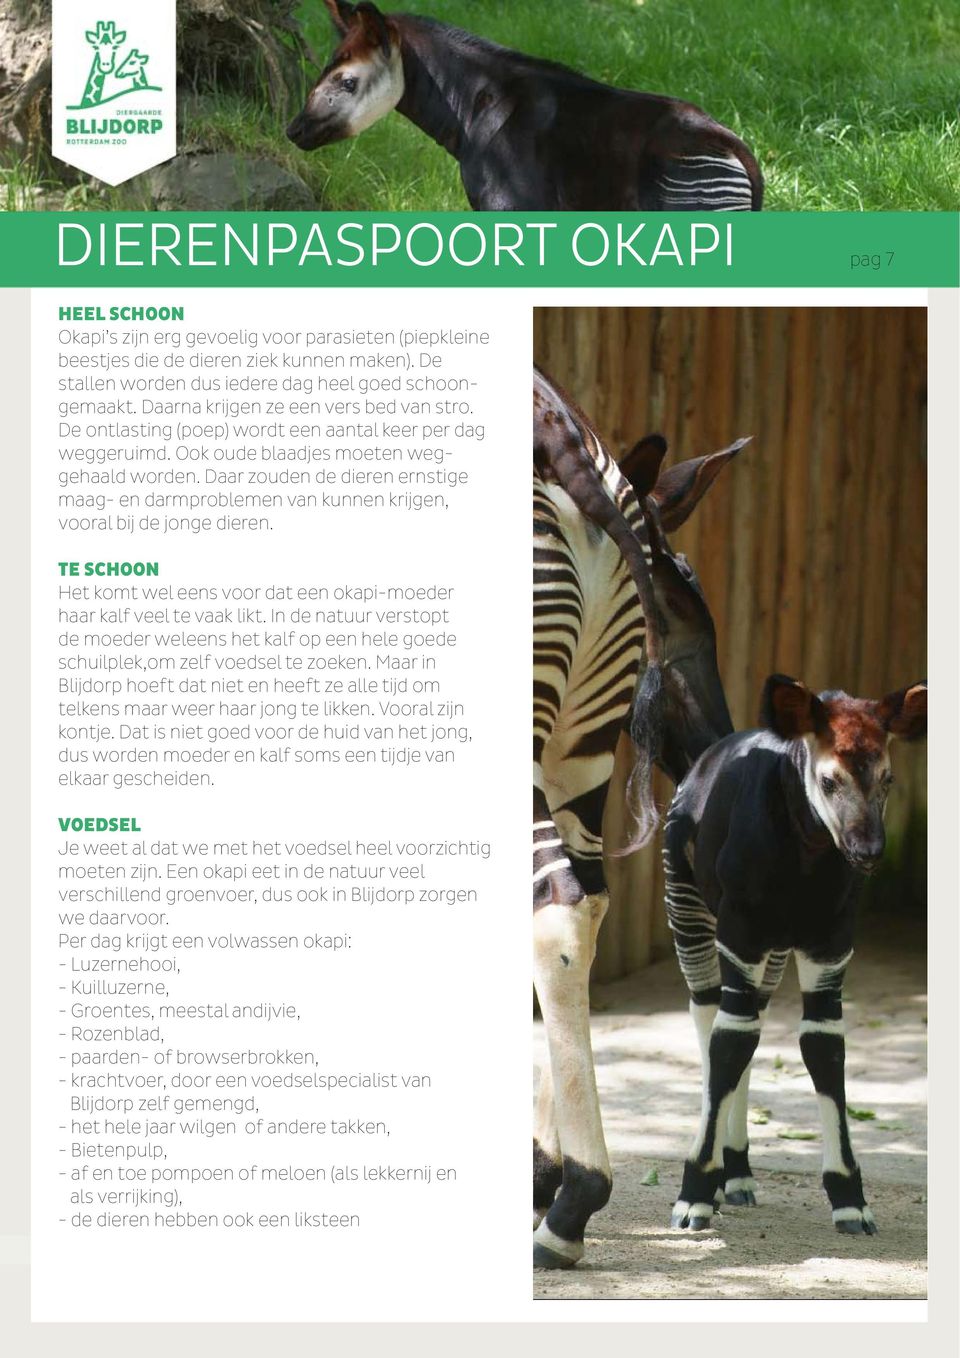 Daar zouden de dieren ernstige maag- en darmproblemen van kunnen krijgen, vooral bij de jonge dieren. TE SCHOON Het komt wel eens voor dat een okapi-moeder haar kalf veel te vaak likt.